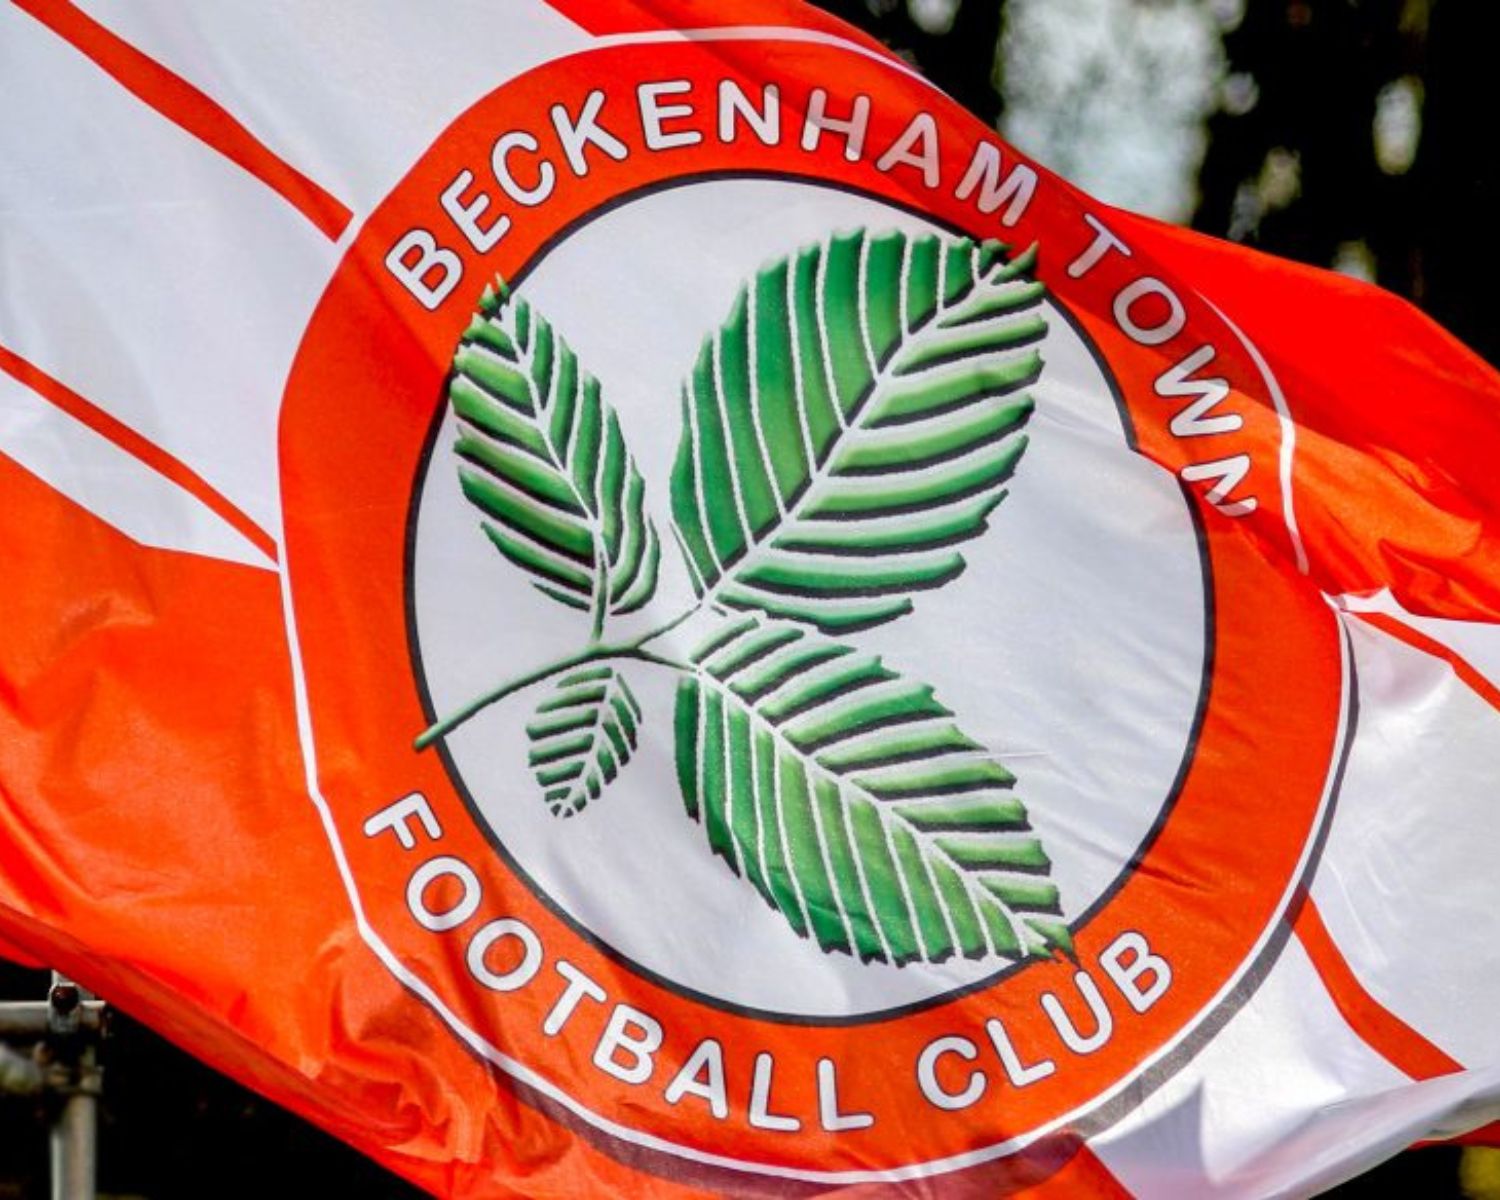 beckenham-town-fc-10-football-club-facts